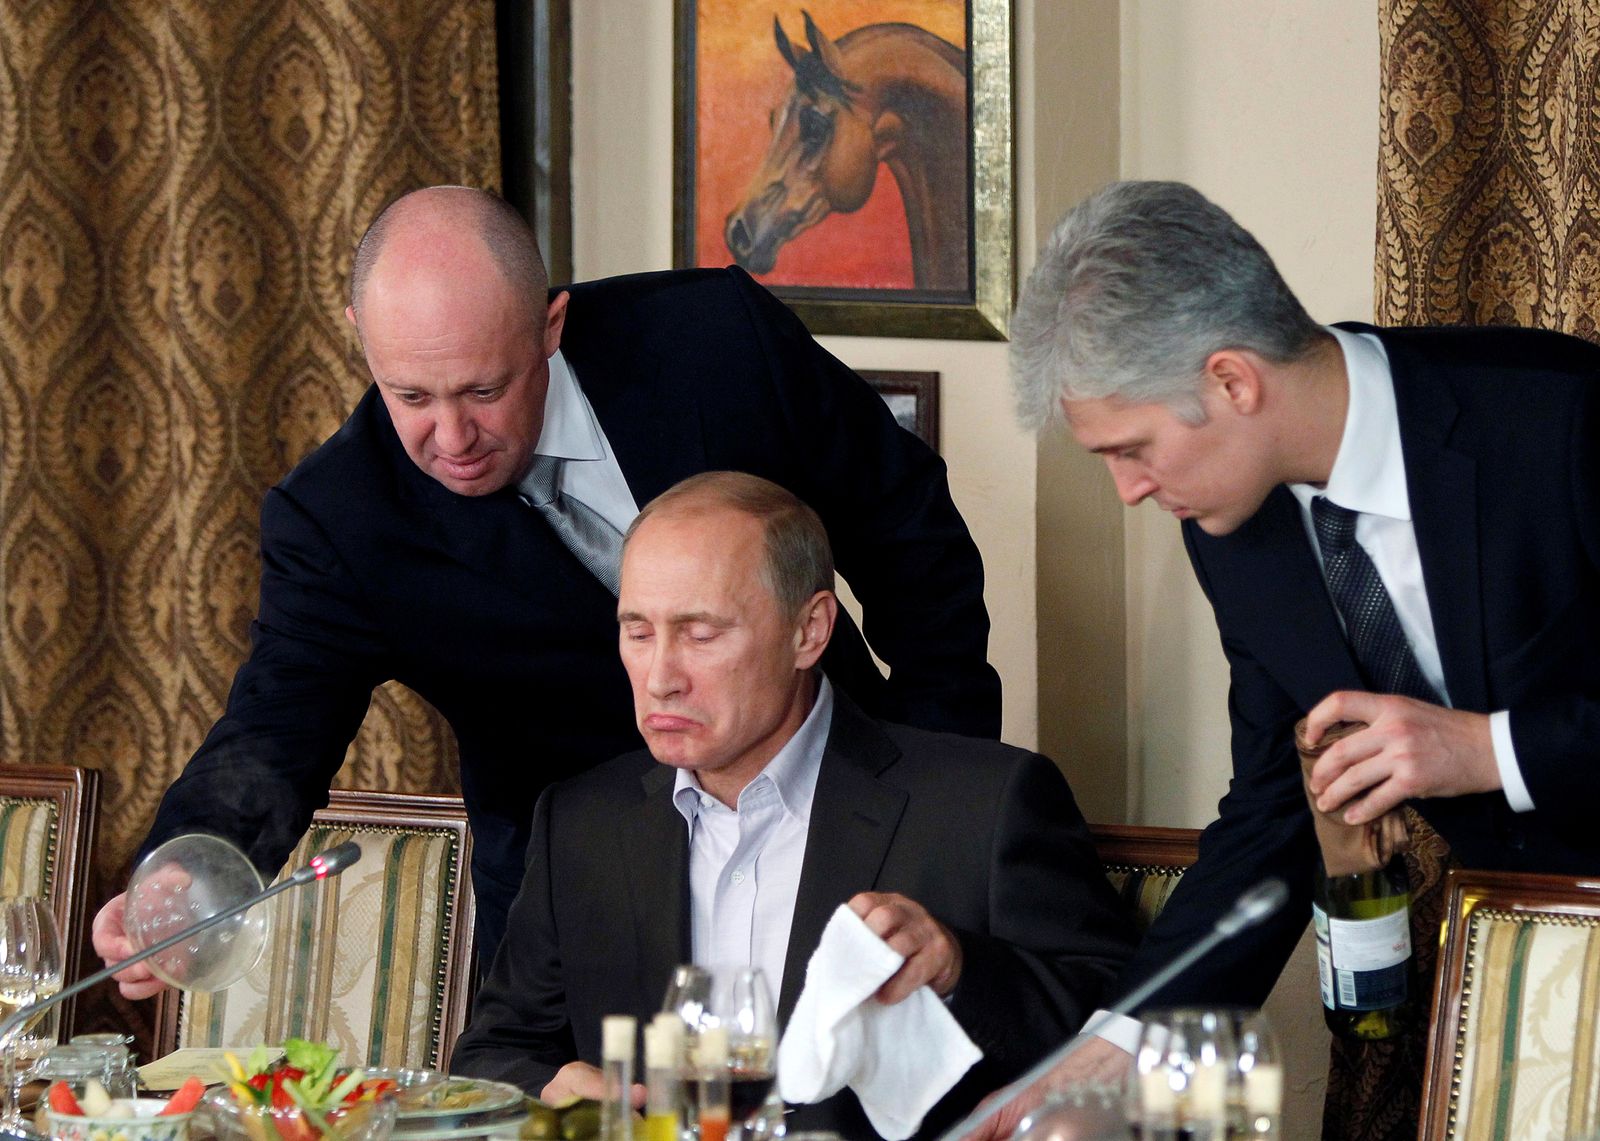 إيفجيني بريجوزين (يسار) يساعد فلاديمير بوتين حينما كان رئيساً للوزراء خلال مأدبة عشاء في مجمع للفروسية خارج موسكو. 11 نوفمبر 2011 - REUTERS